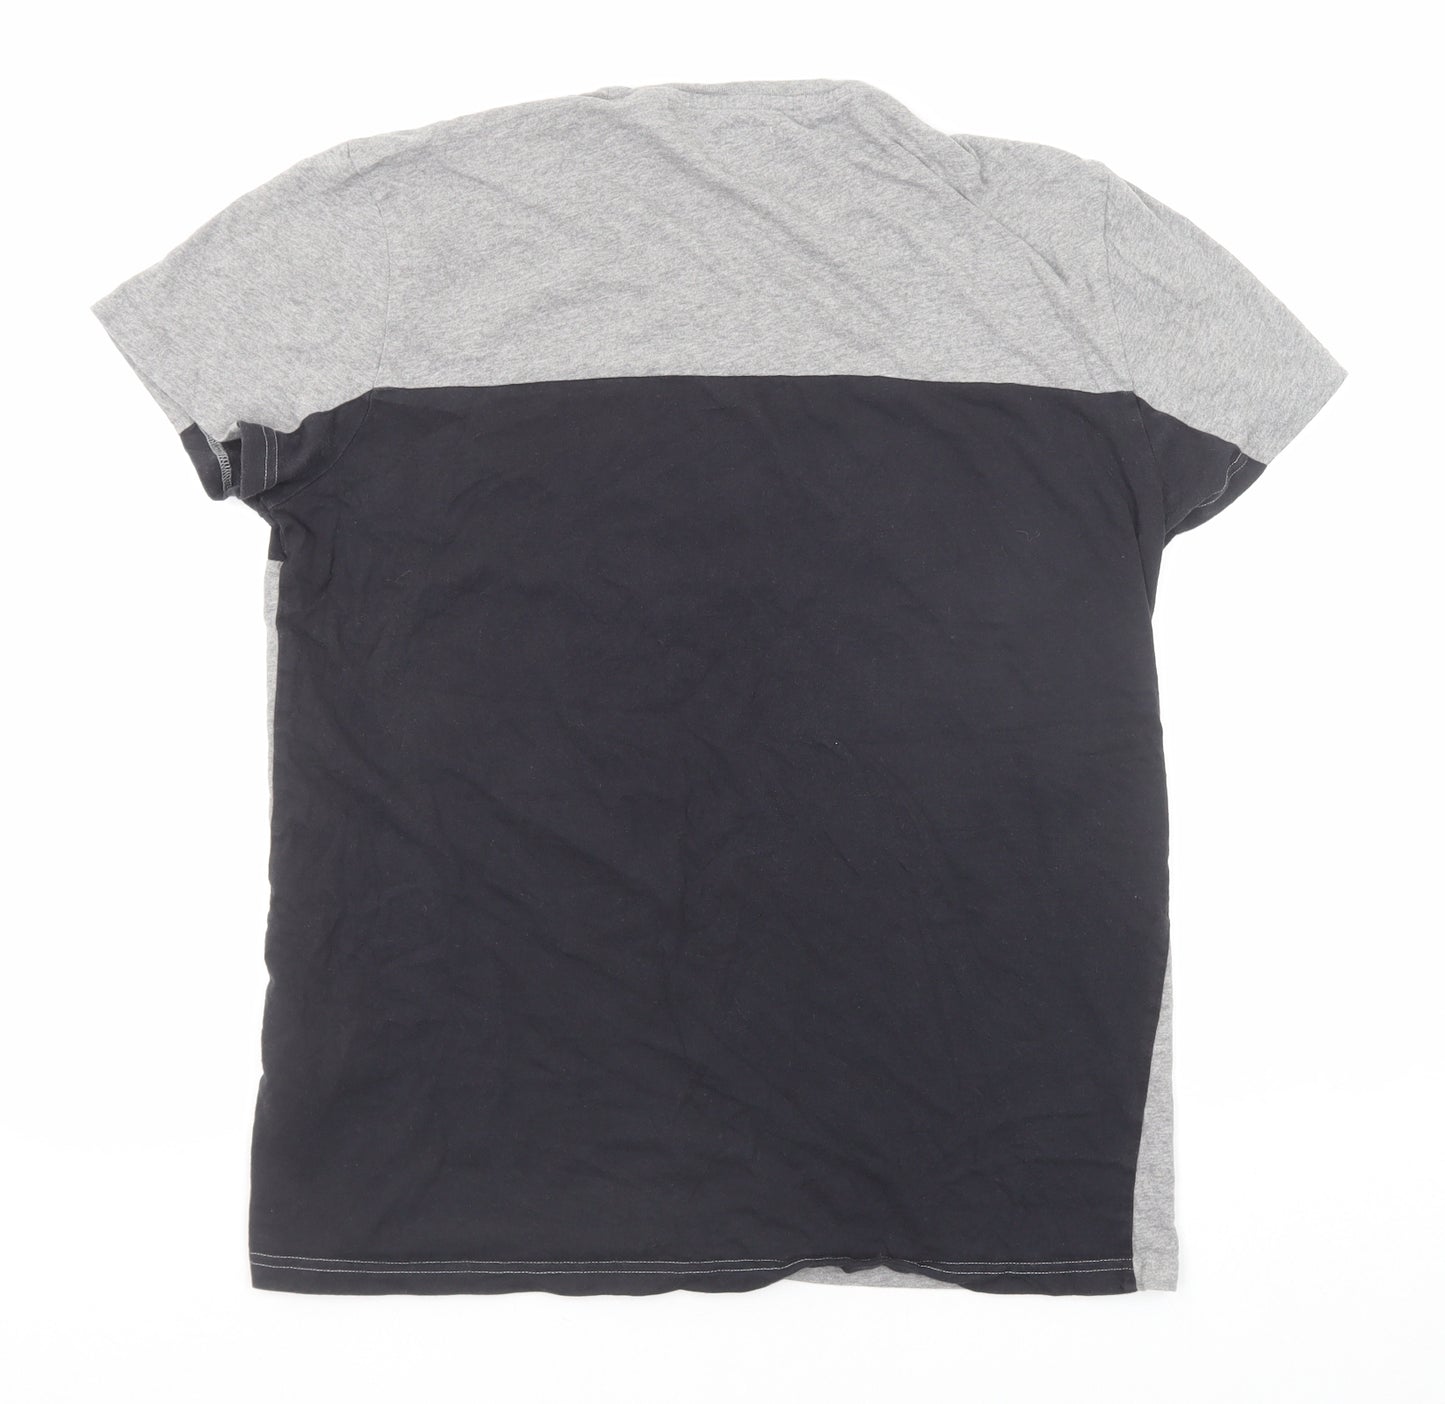 Jack Wills Mens Grey Cotton T-Shirt Size M Round Neck